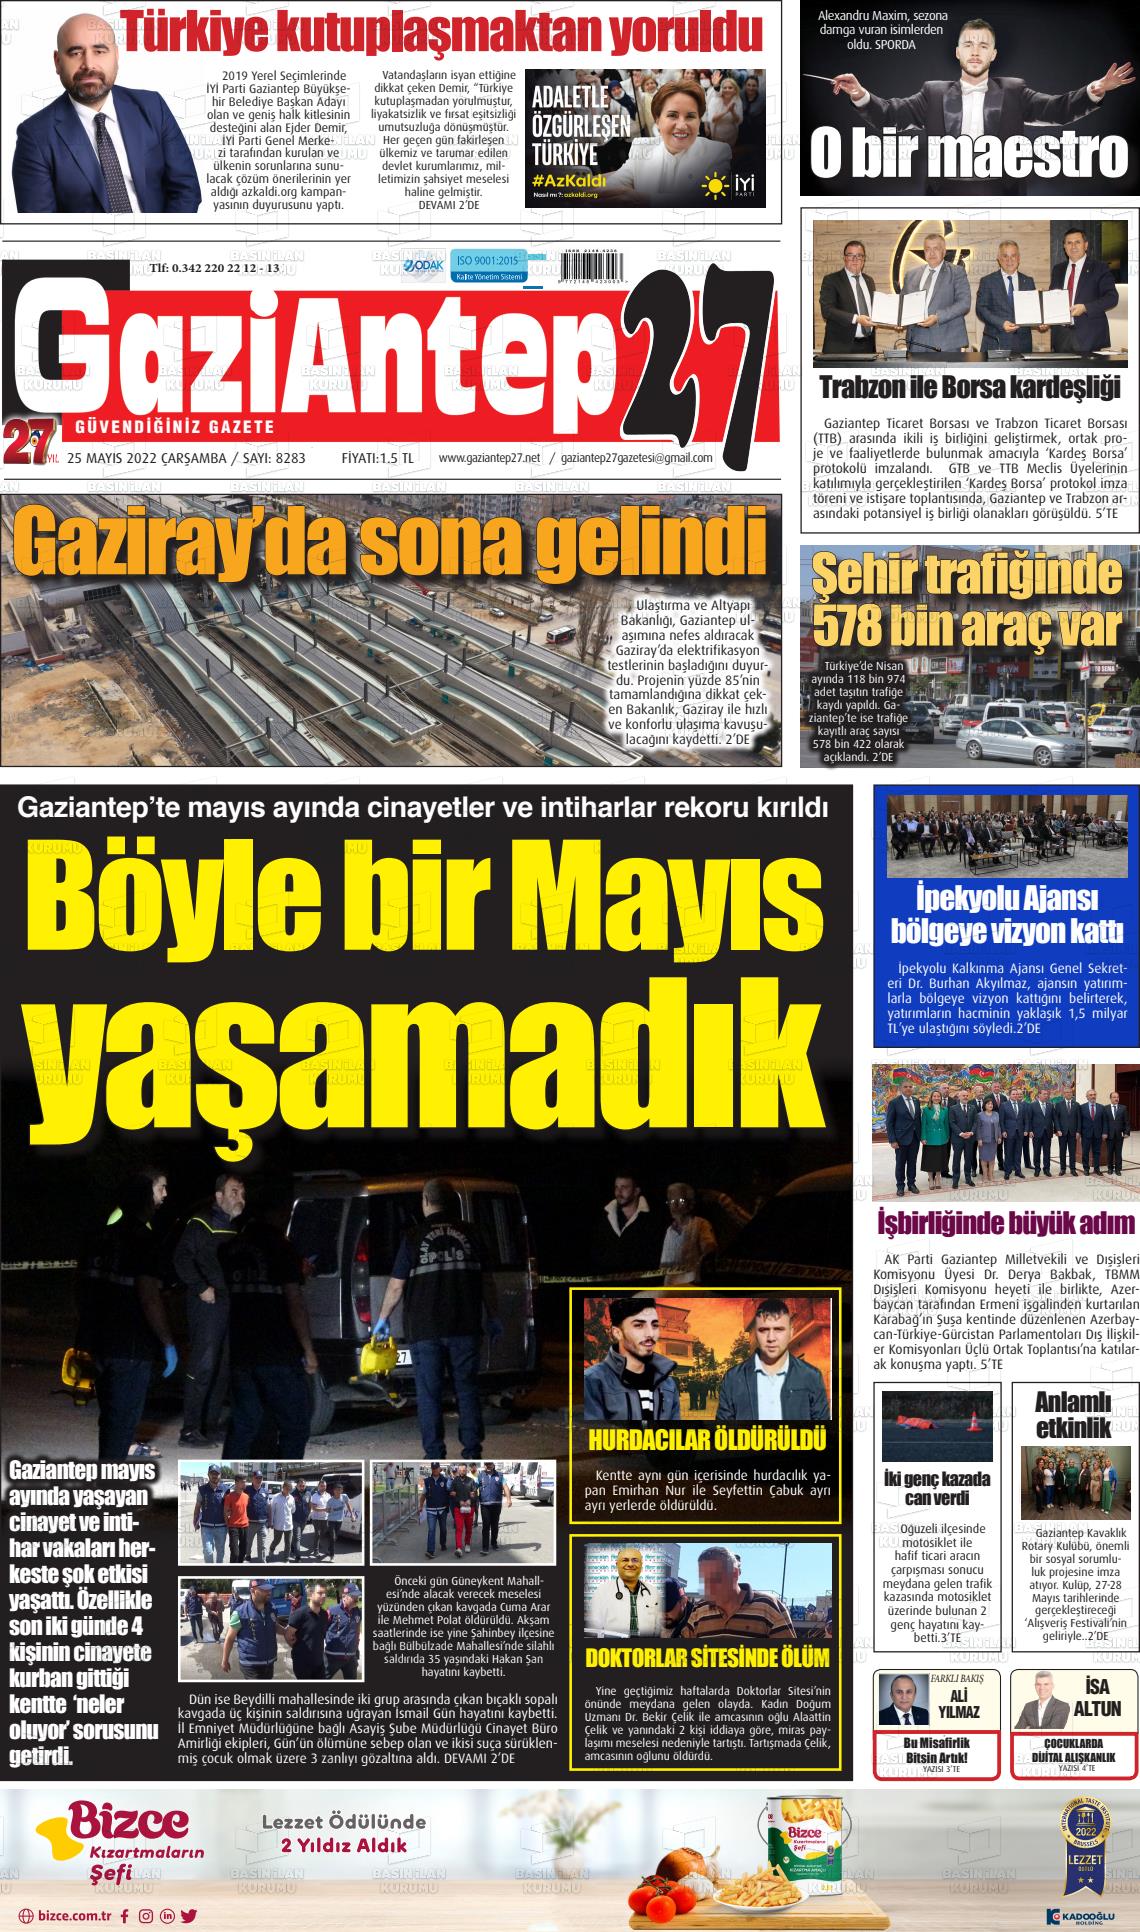 25 Mayıs 2022 Gaziantep 27 Gazete Manşeti